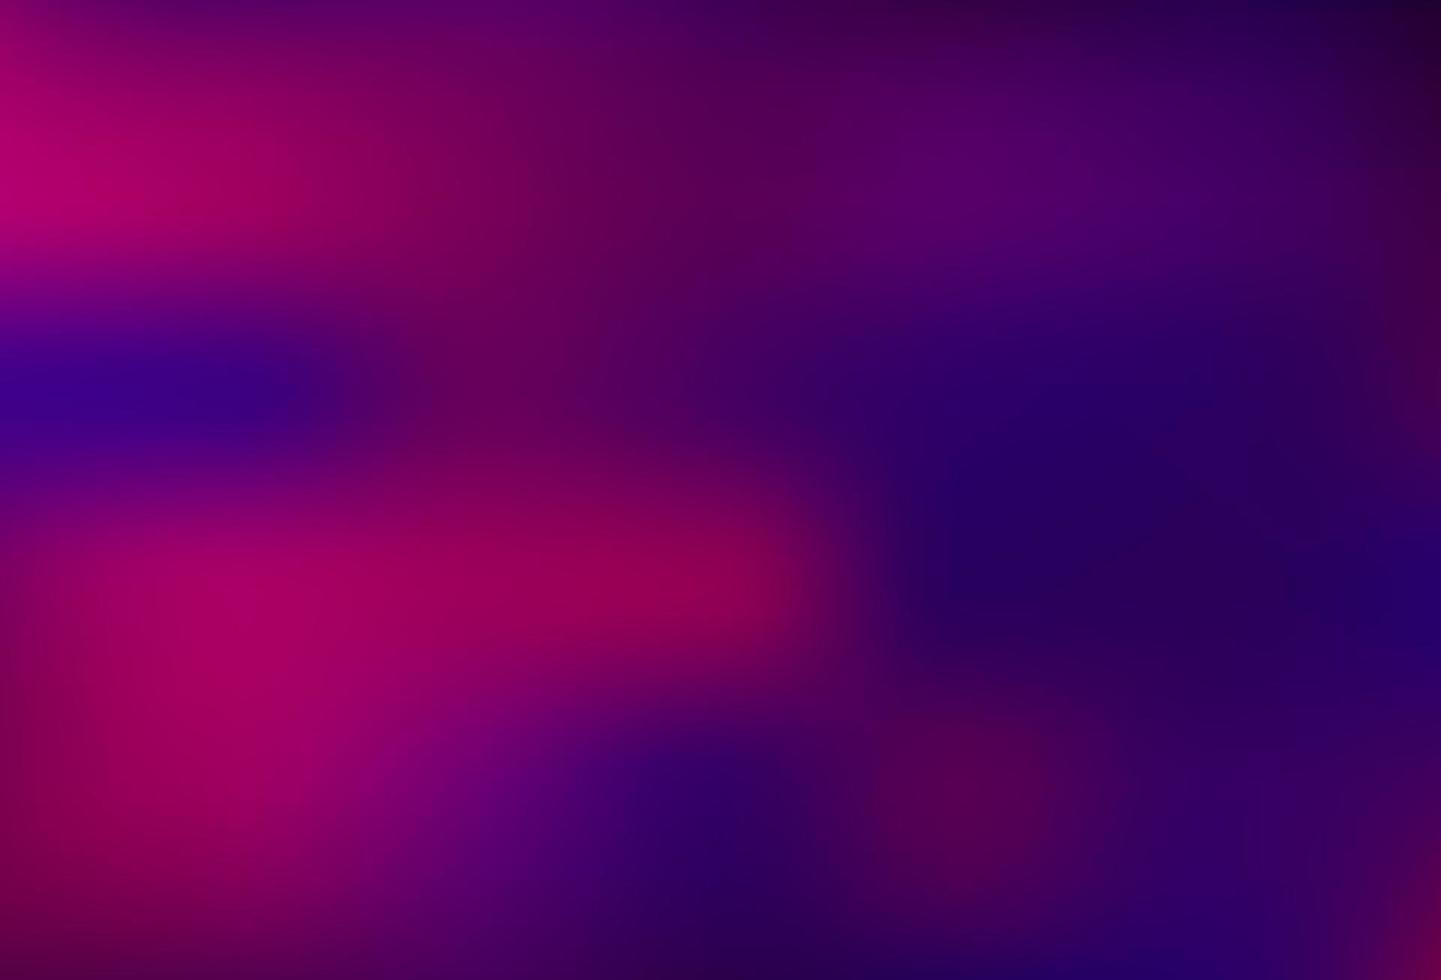 Dark Purple vector abstract blurred background. 3217325 Vector Art at  Vecteezy